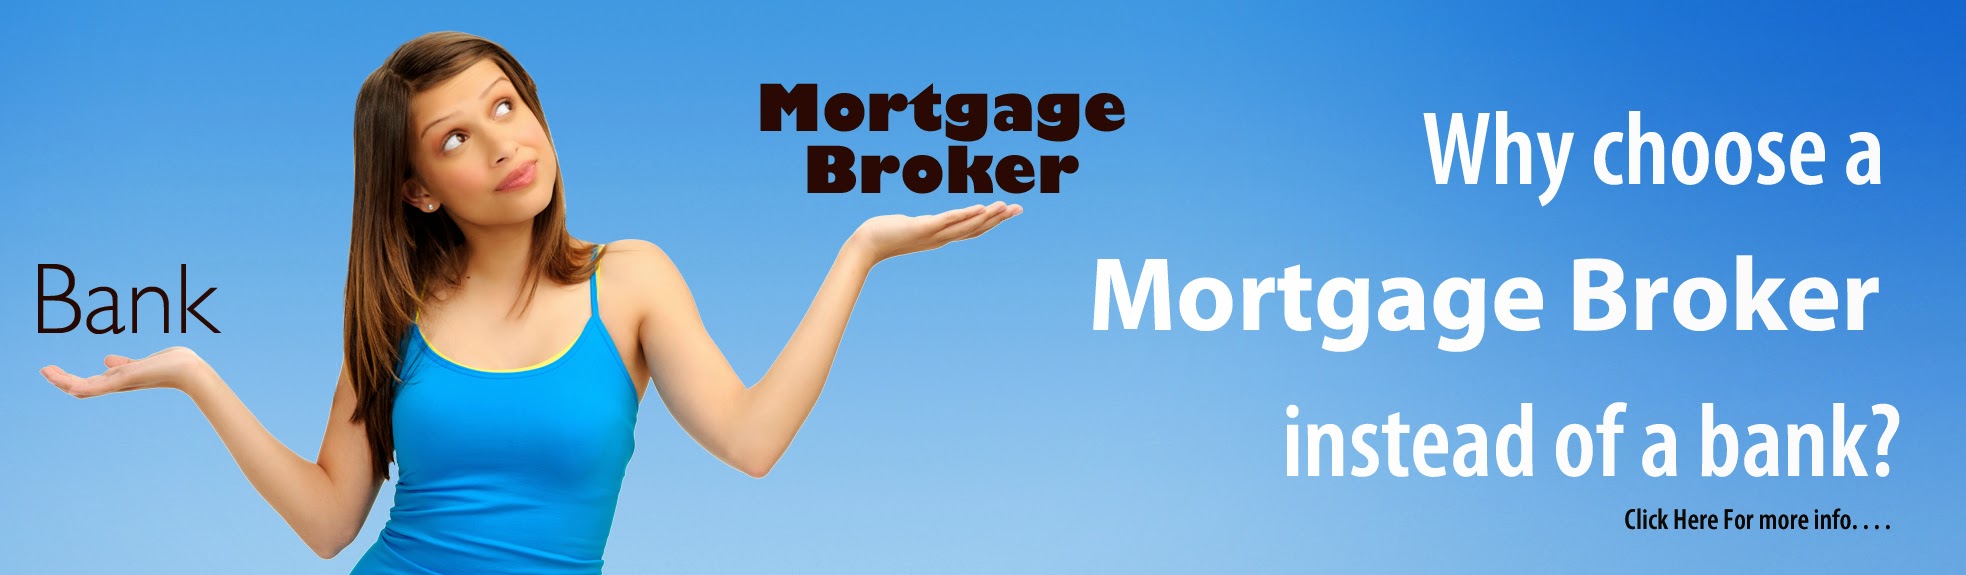 Joonago Mortgage Services NMLS 249858 AZ Mb-0945285